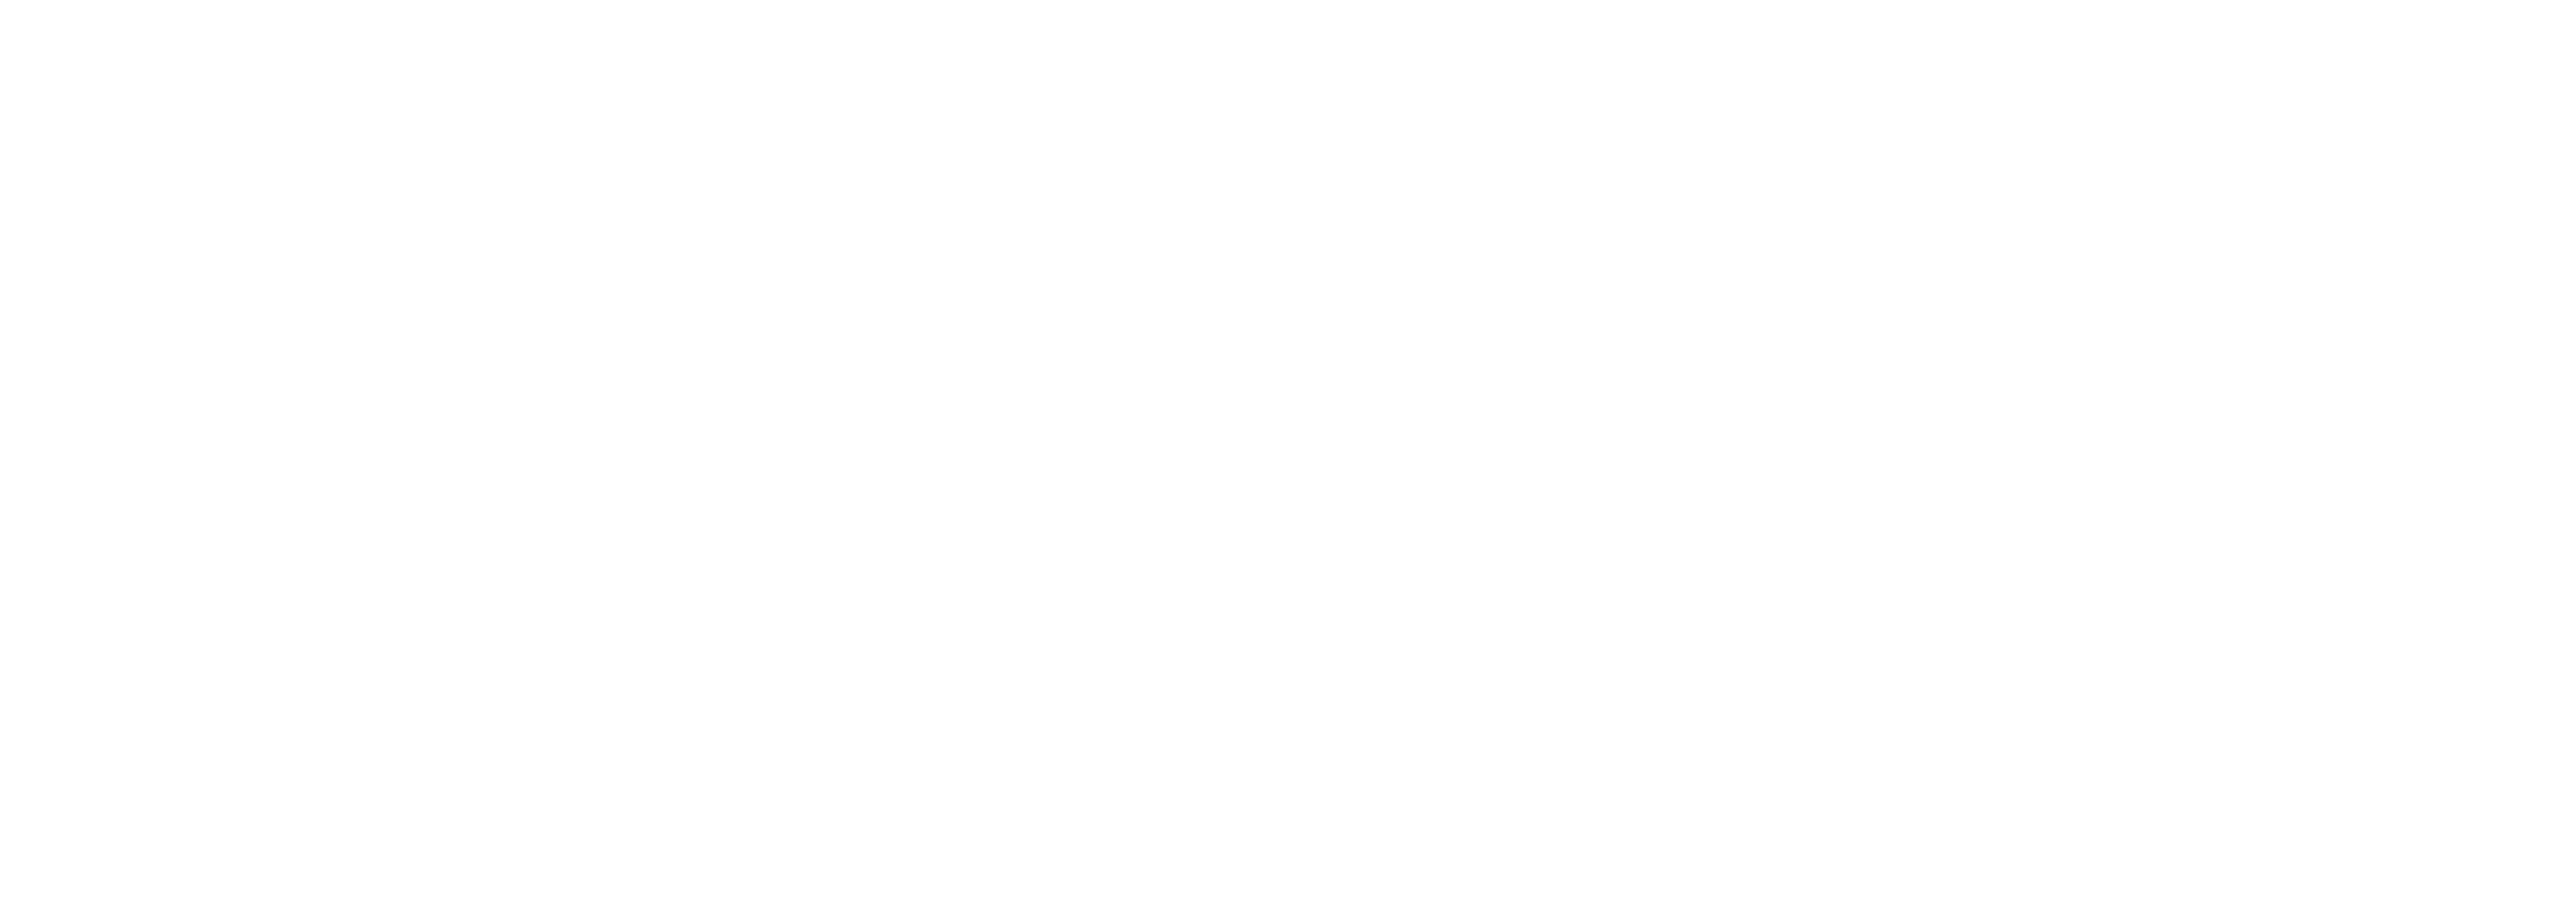 NYX award logo